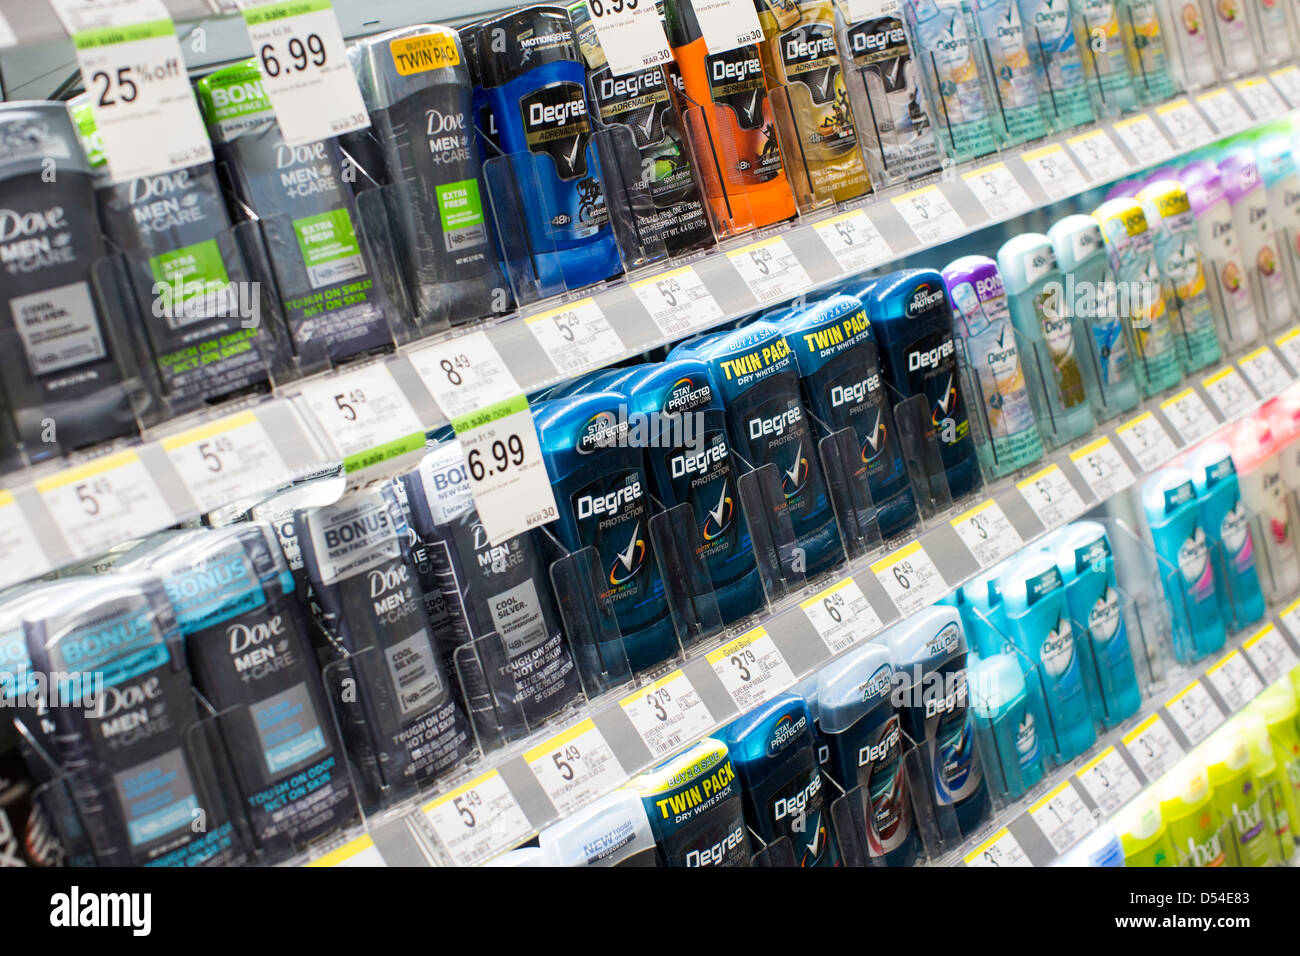 Grado desodorante Dove y productos en exhibición en un Walgreens Flagship store. Foto de stock